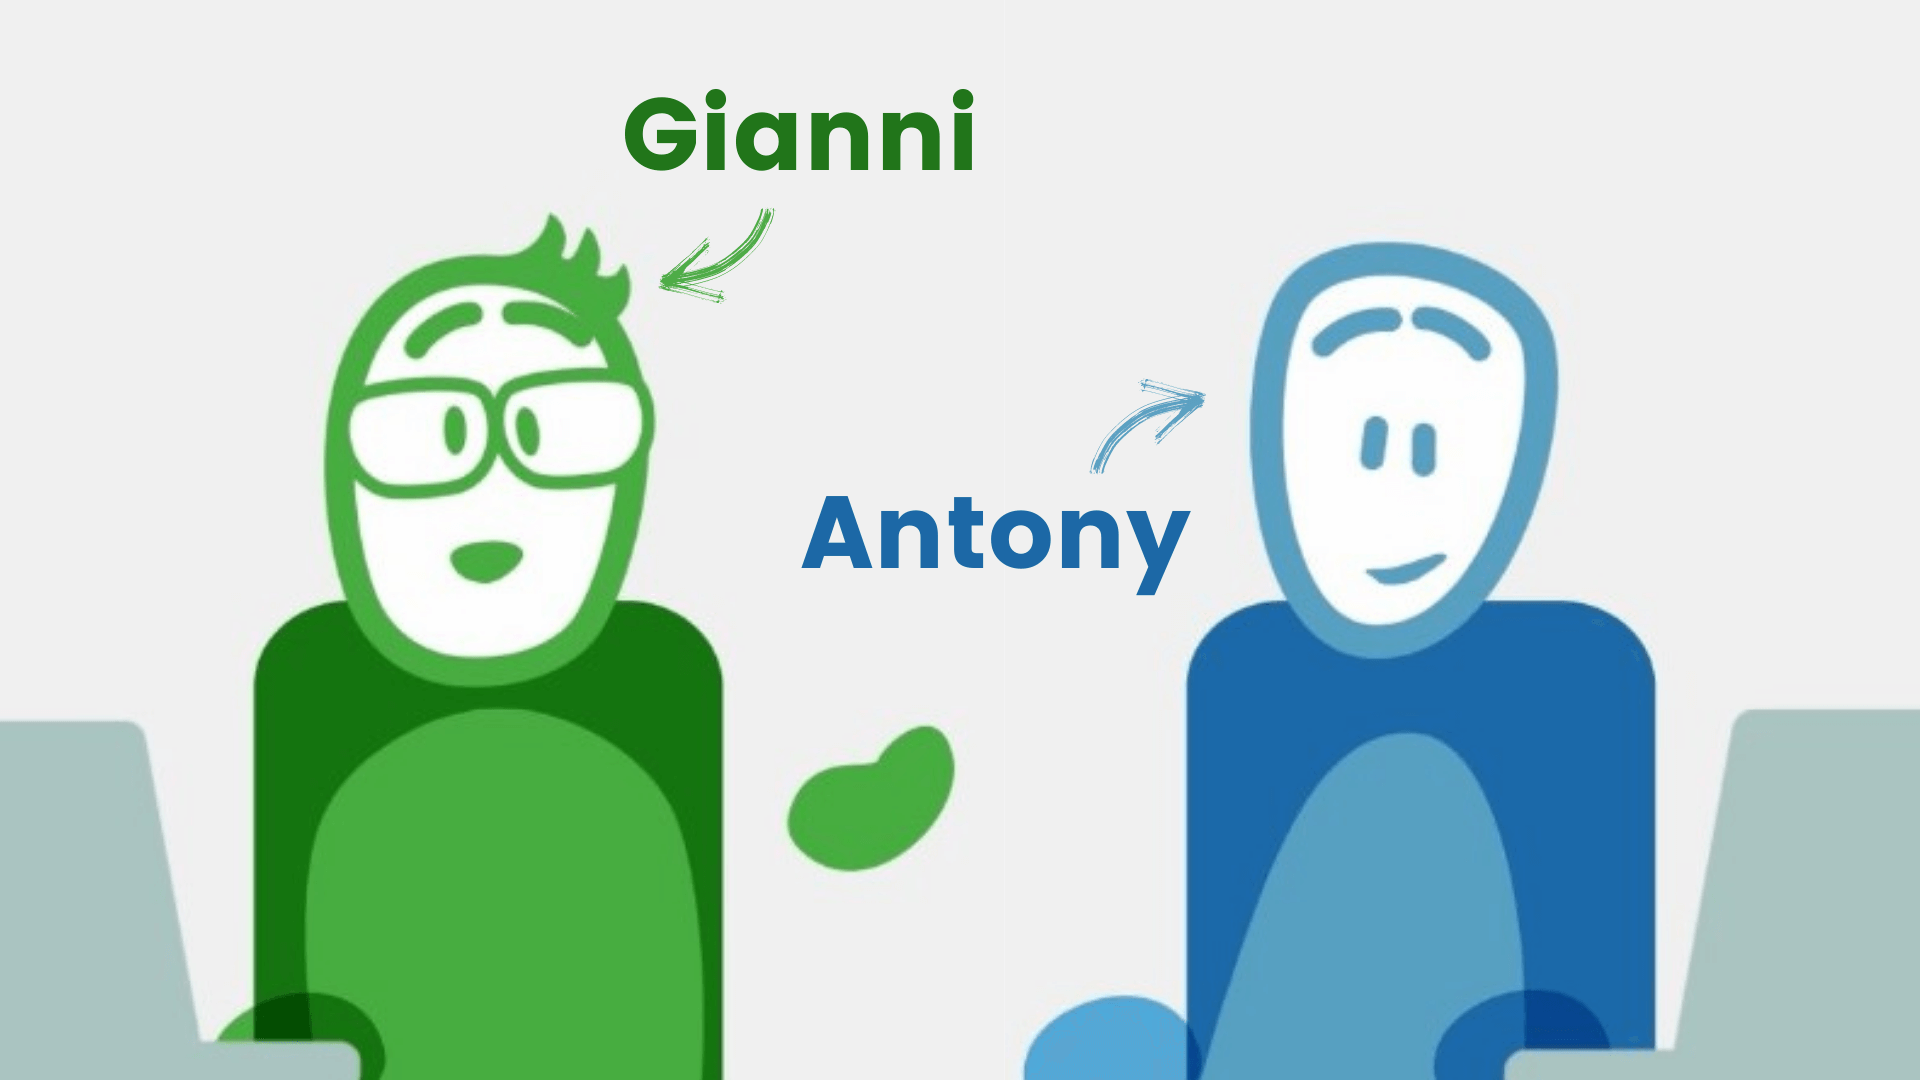 Présentation des deux fondateurs de la marque : Gianni et Antony